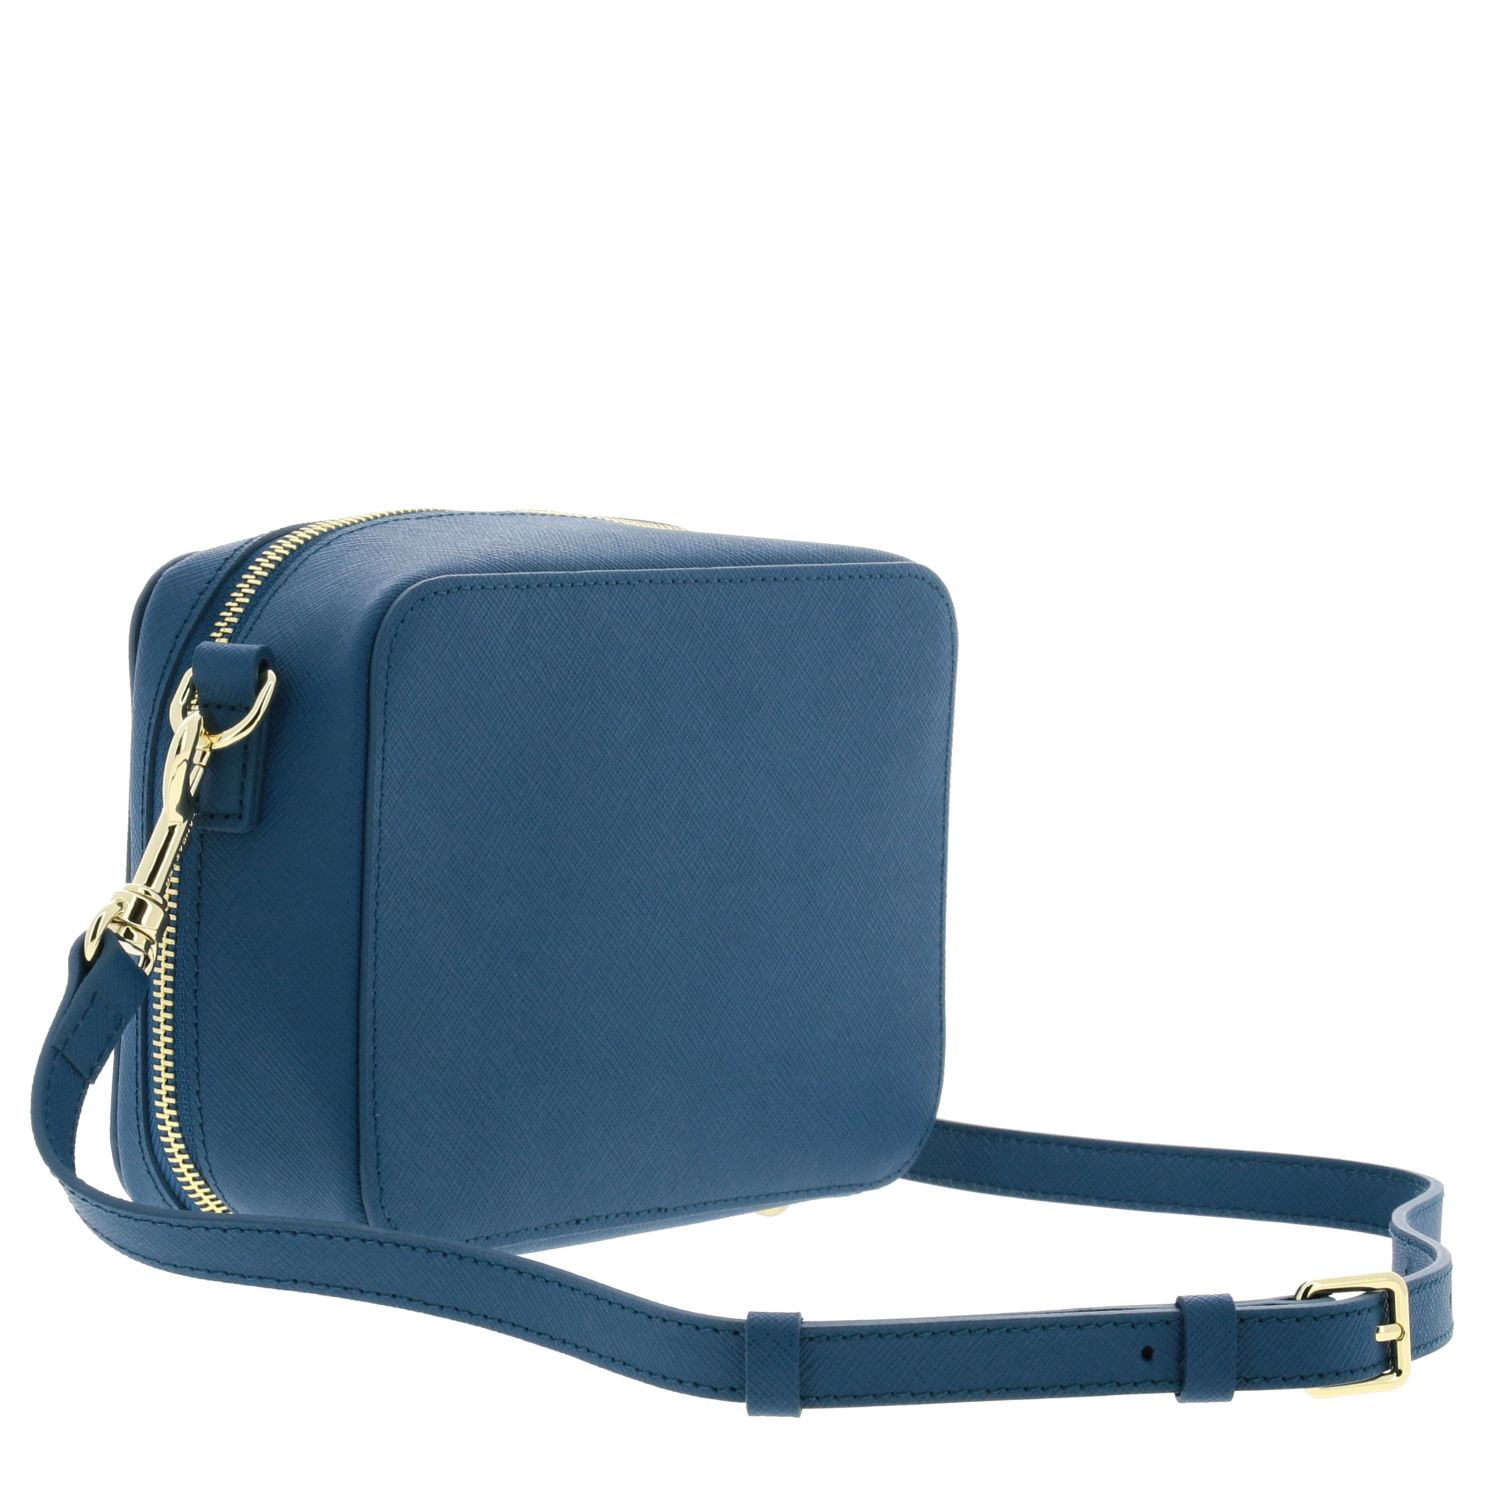 Lancaster Paris Outlet: Shoulder bag women | Mini Bag Lancaster Paris ...